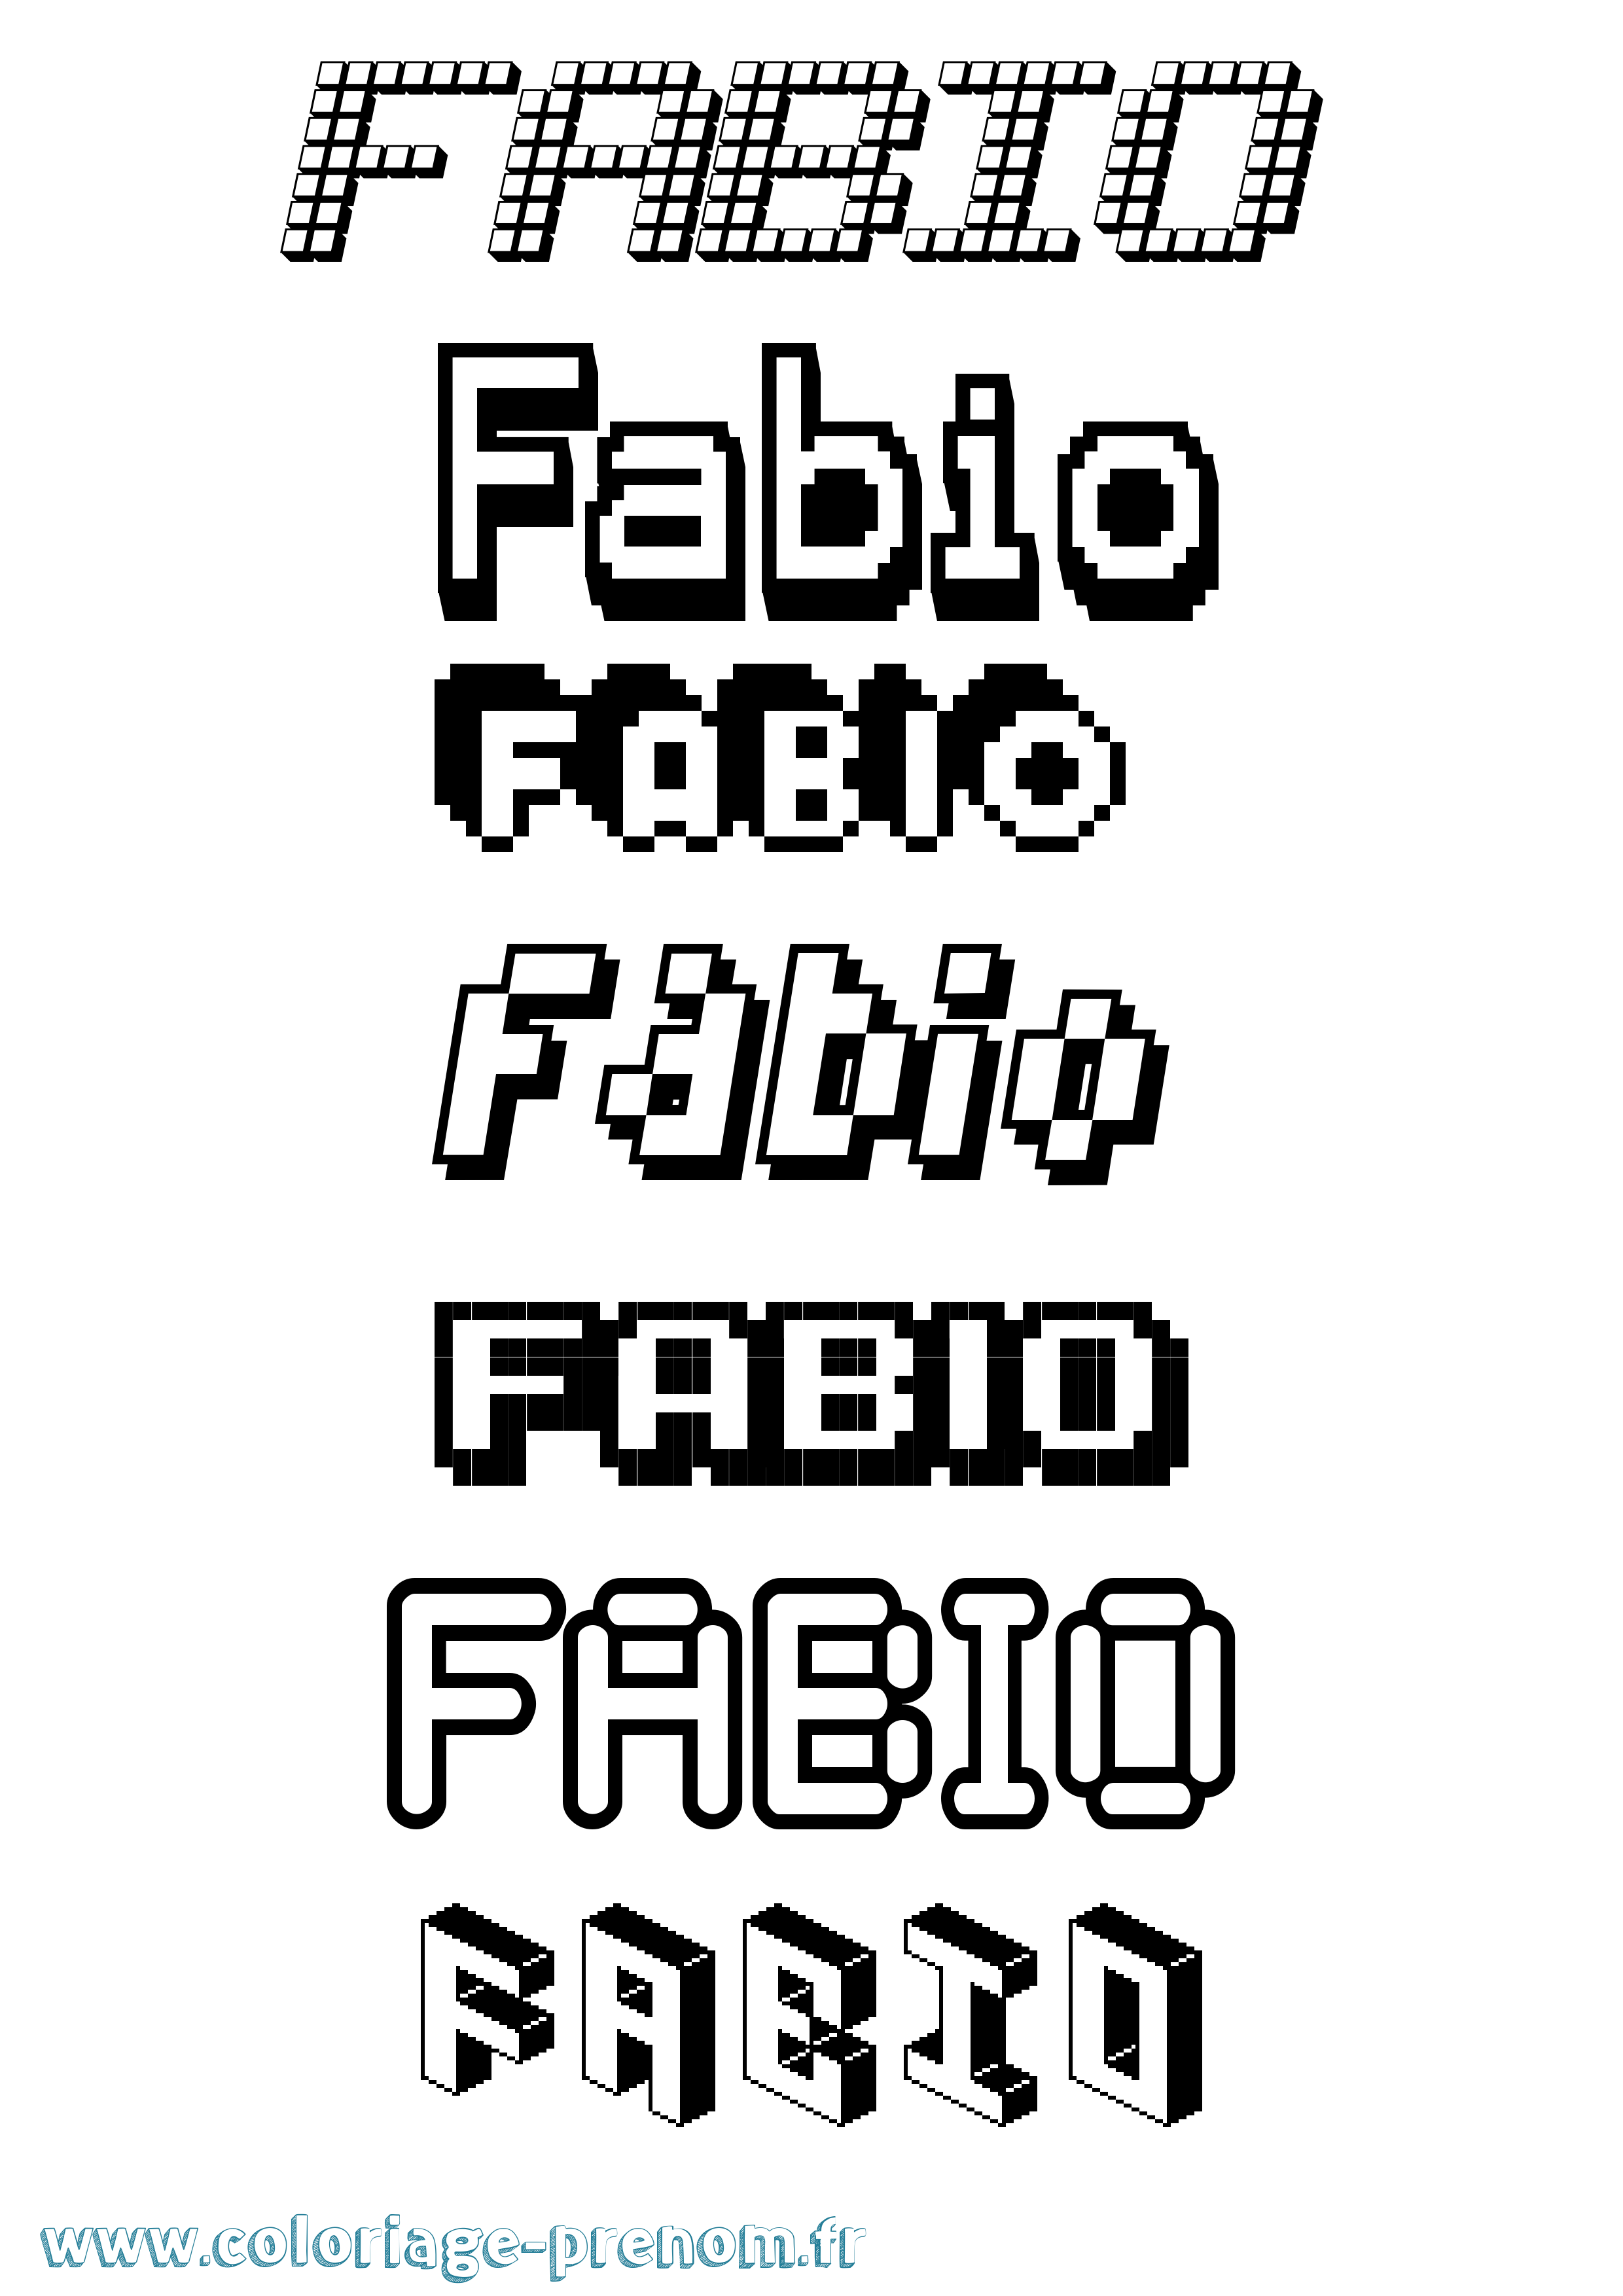 Coloriage prénom Fabio Pixel